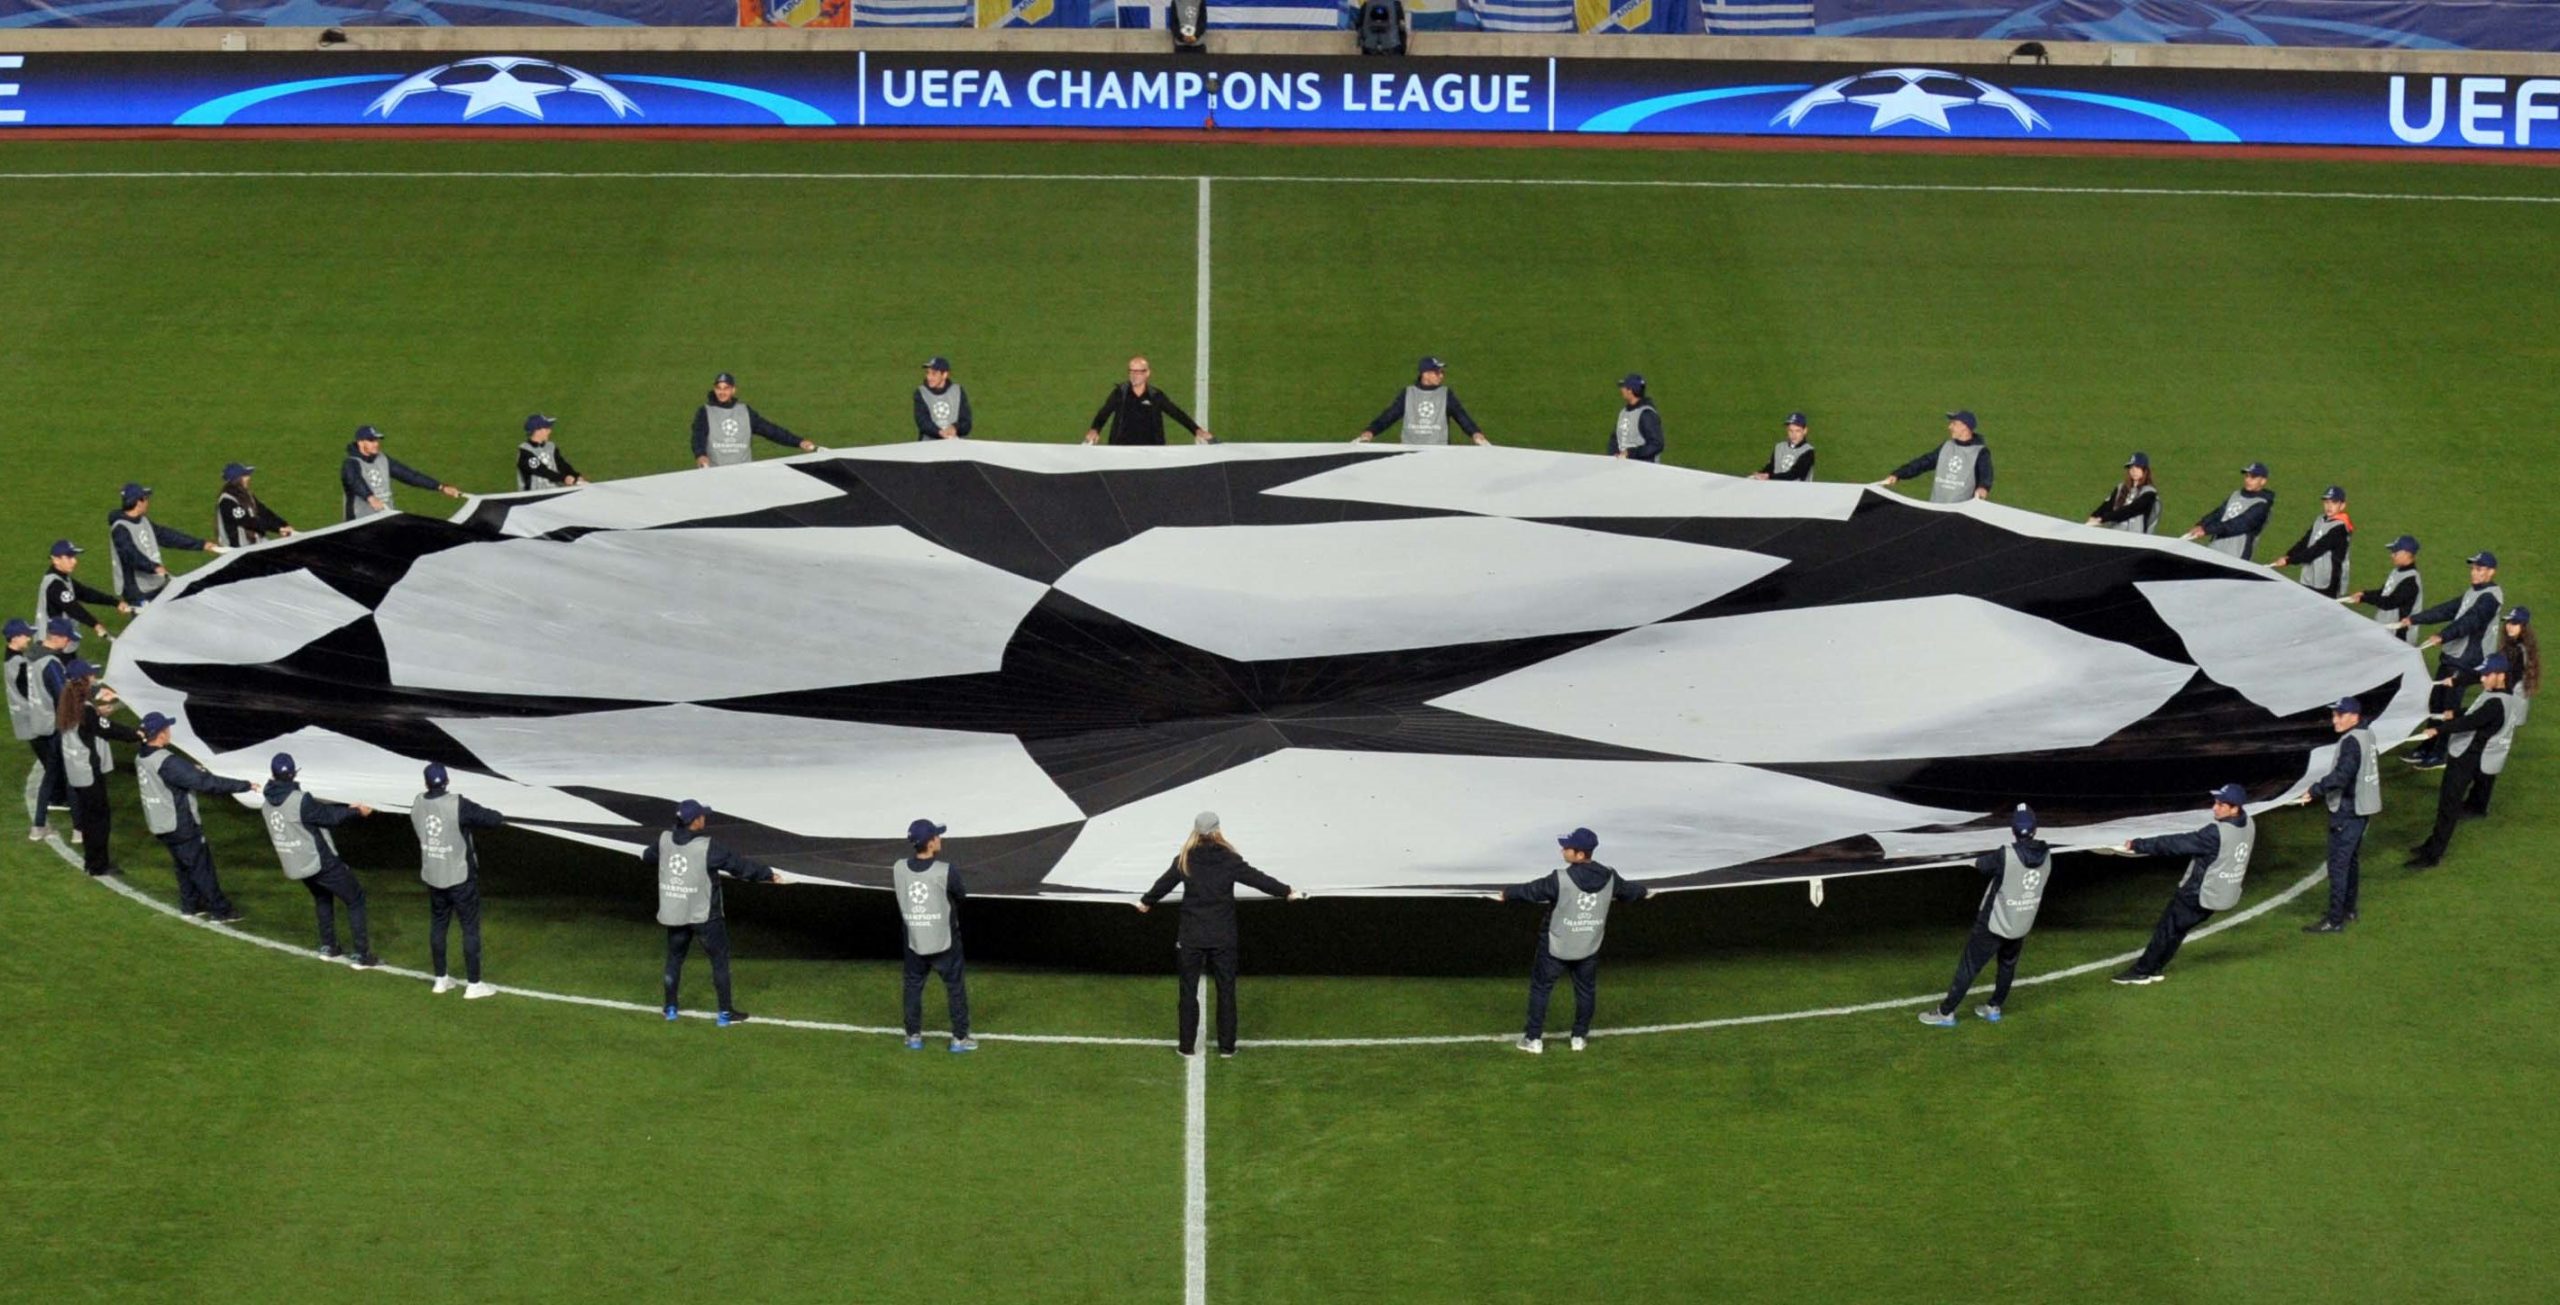 Champions League: Αυτό είναι το καλεντάρι της διοργάνωσης – Την 1η εβδομάδα του Ιουλίου ξεκινάει ο πρωταθλητής Ελλάδας